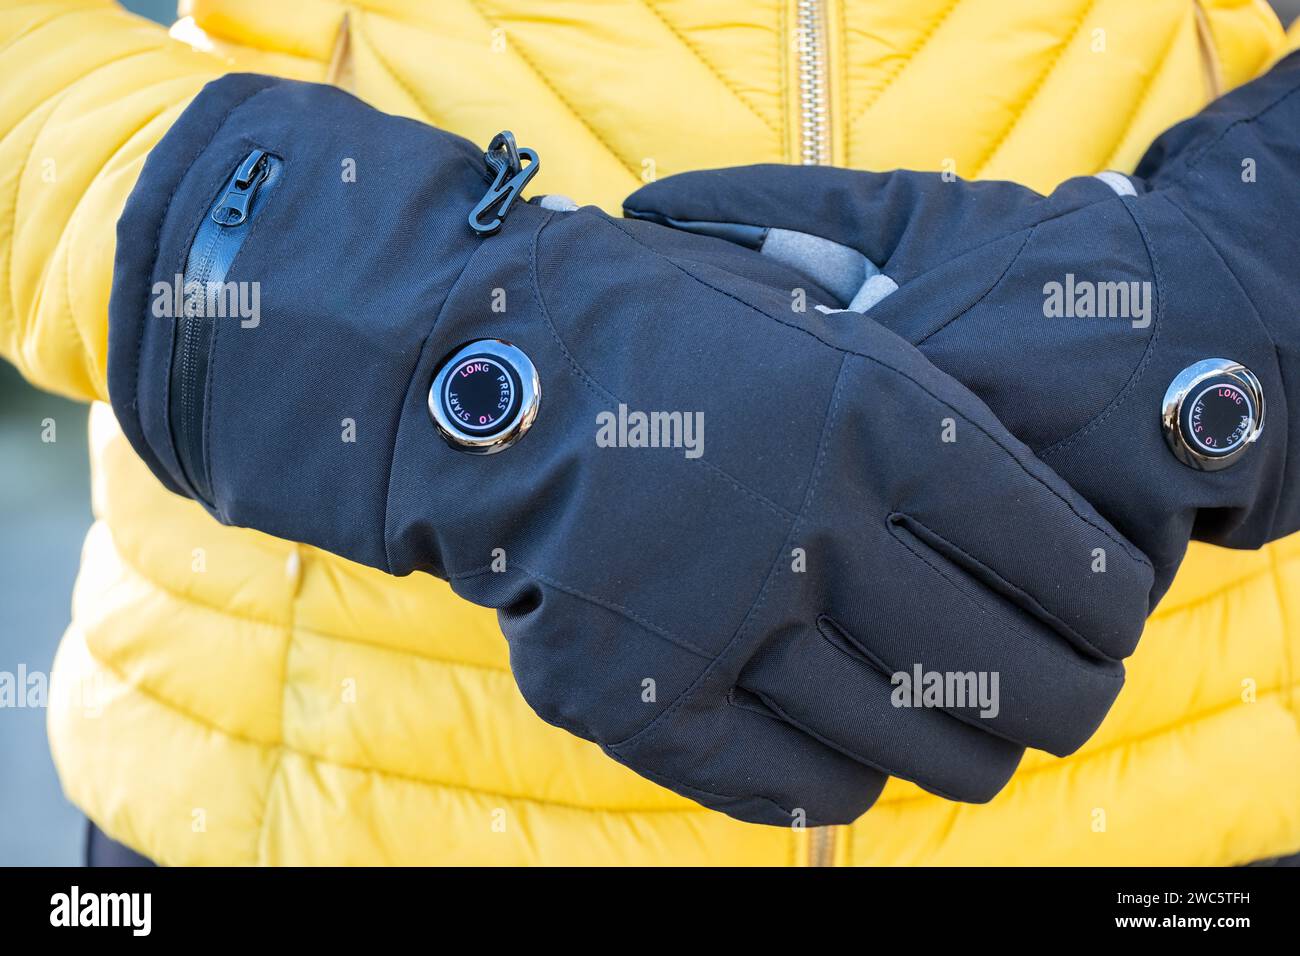 Une femme portant des gants chauffés par batterie par temps froid. Les gants ont des réglages de chaleur variables et aident ceux qui souffrent de la maladie de Reynauds Banque D'Images